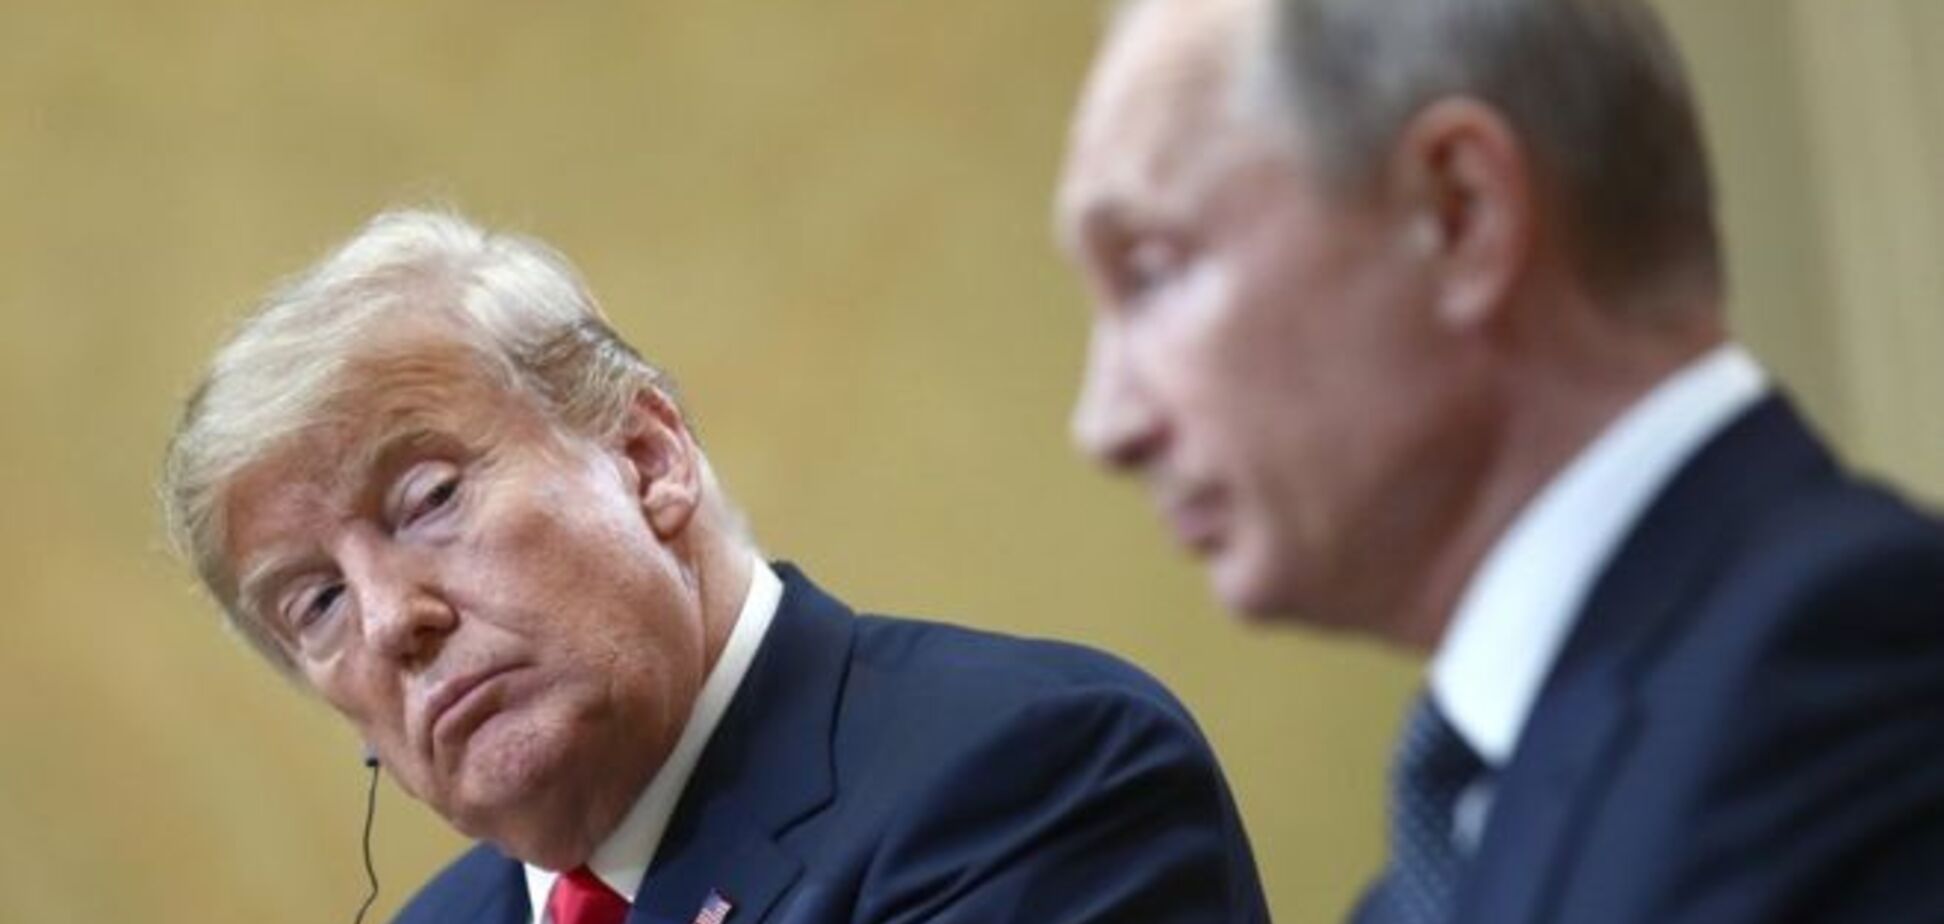 Сплетничали и шутили: раскрылись детали разговора Трампа и Путина